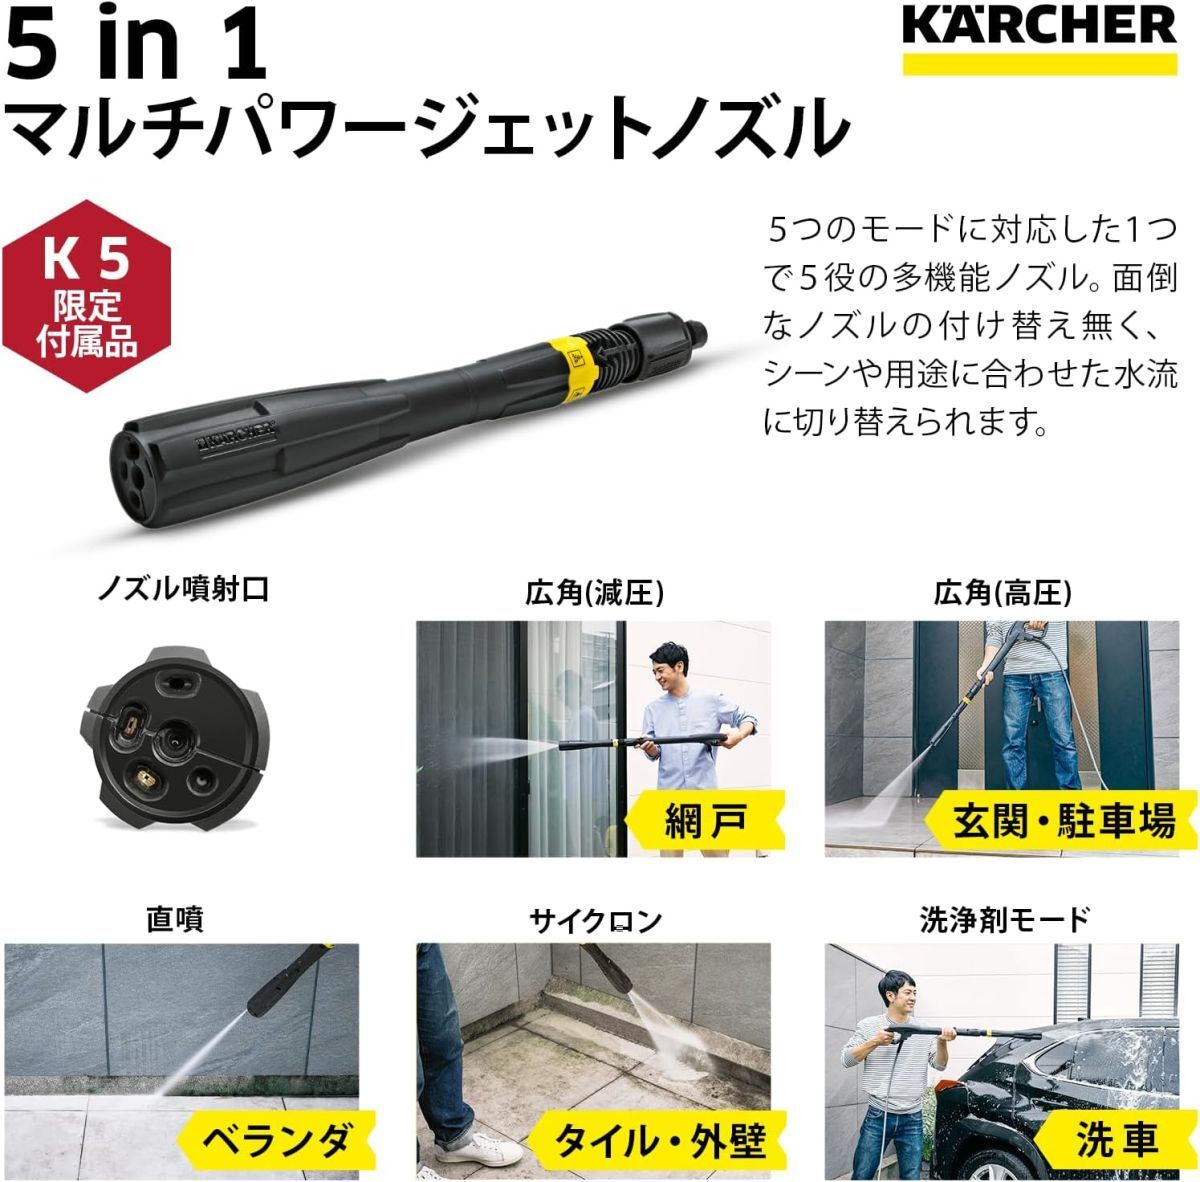 【新品送料無料】【新モデル】ケルヒャー(Karcher)高圧洗浄機 K5 プレミアム サイレント(60Hz) 1.603-541.0_画像3